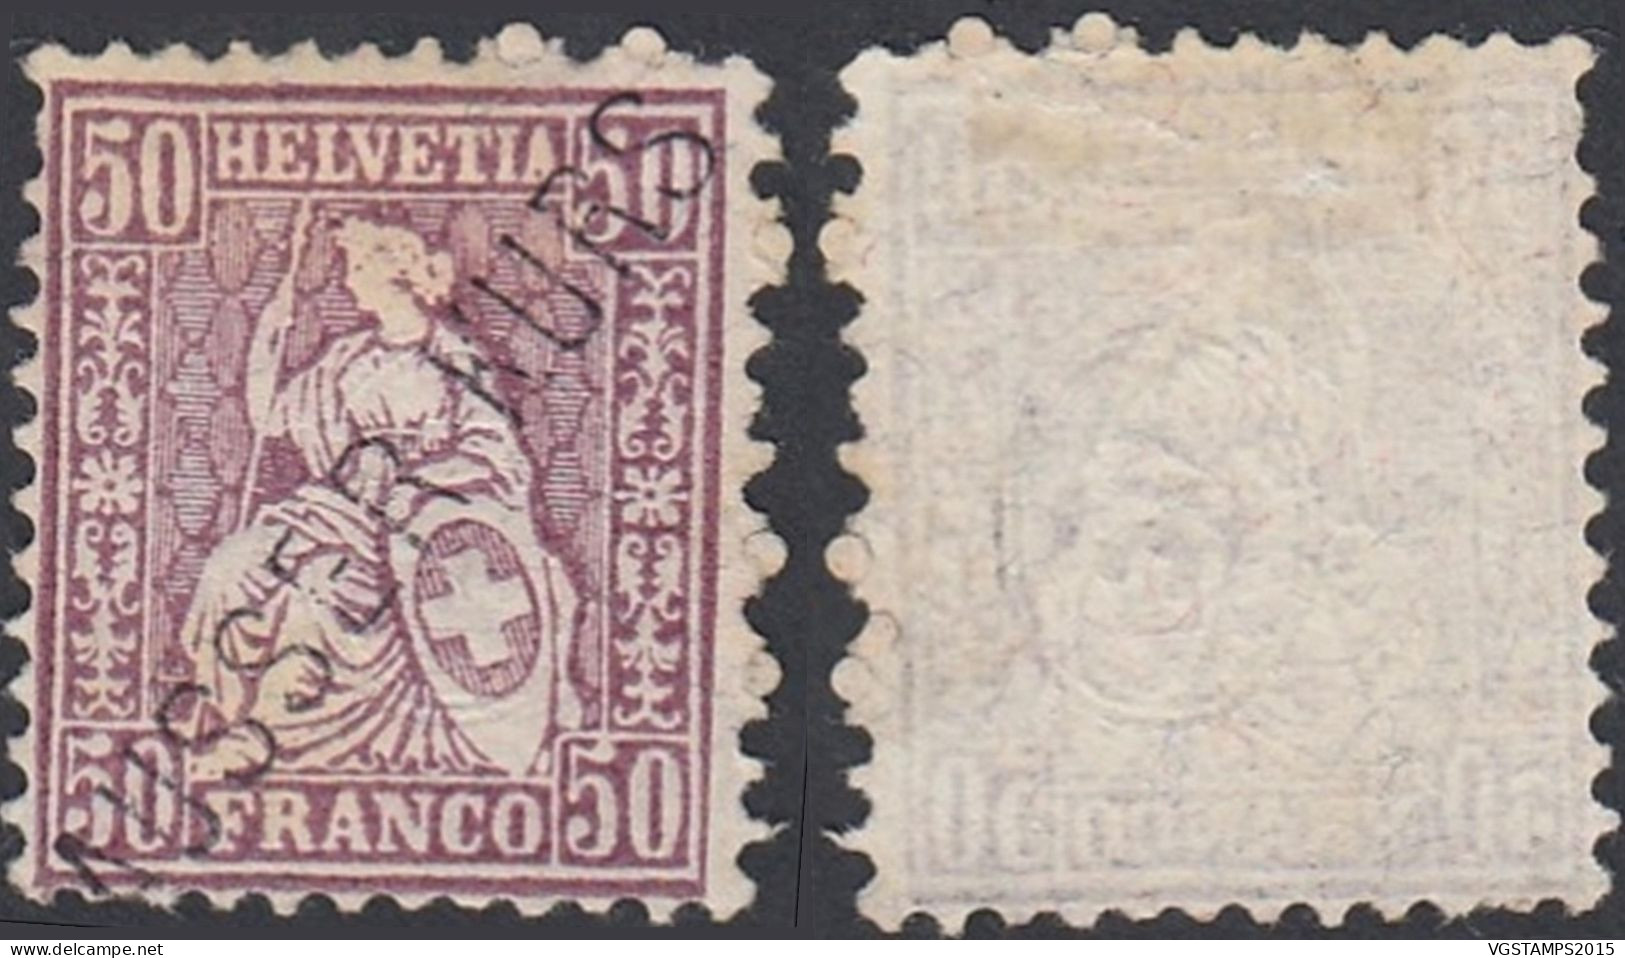 Suisse 1881 -- Timbre Emis Sans Gomme. Mi Nr.: 43. Surchargé "HORS COURS". Pas Commun.... (EB) AR-02439 - Unused Stamps